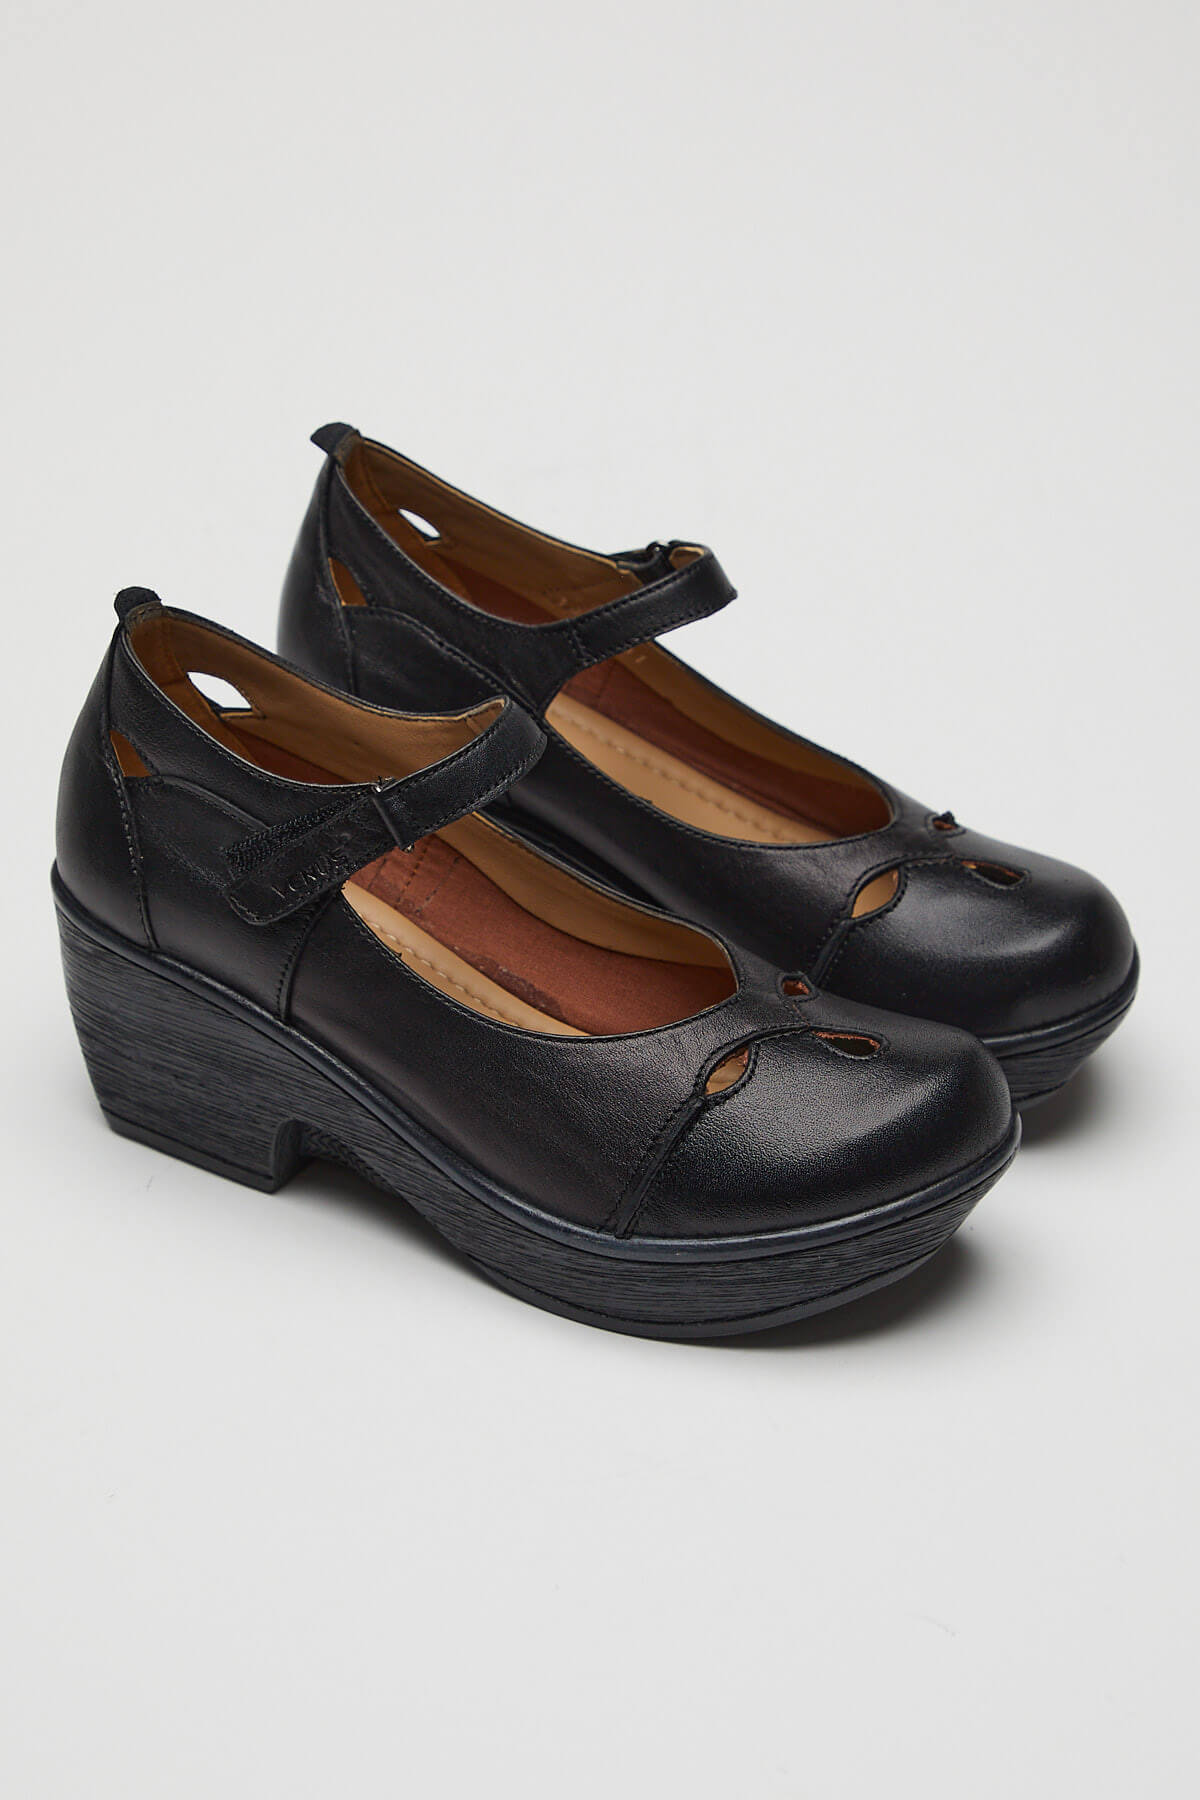 Kadın Apartman Topuk Deri Ayakkabı Siyah 1912501 - Thumbnail